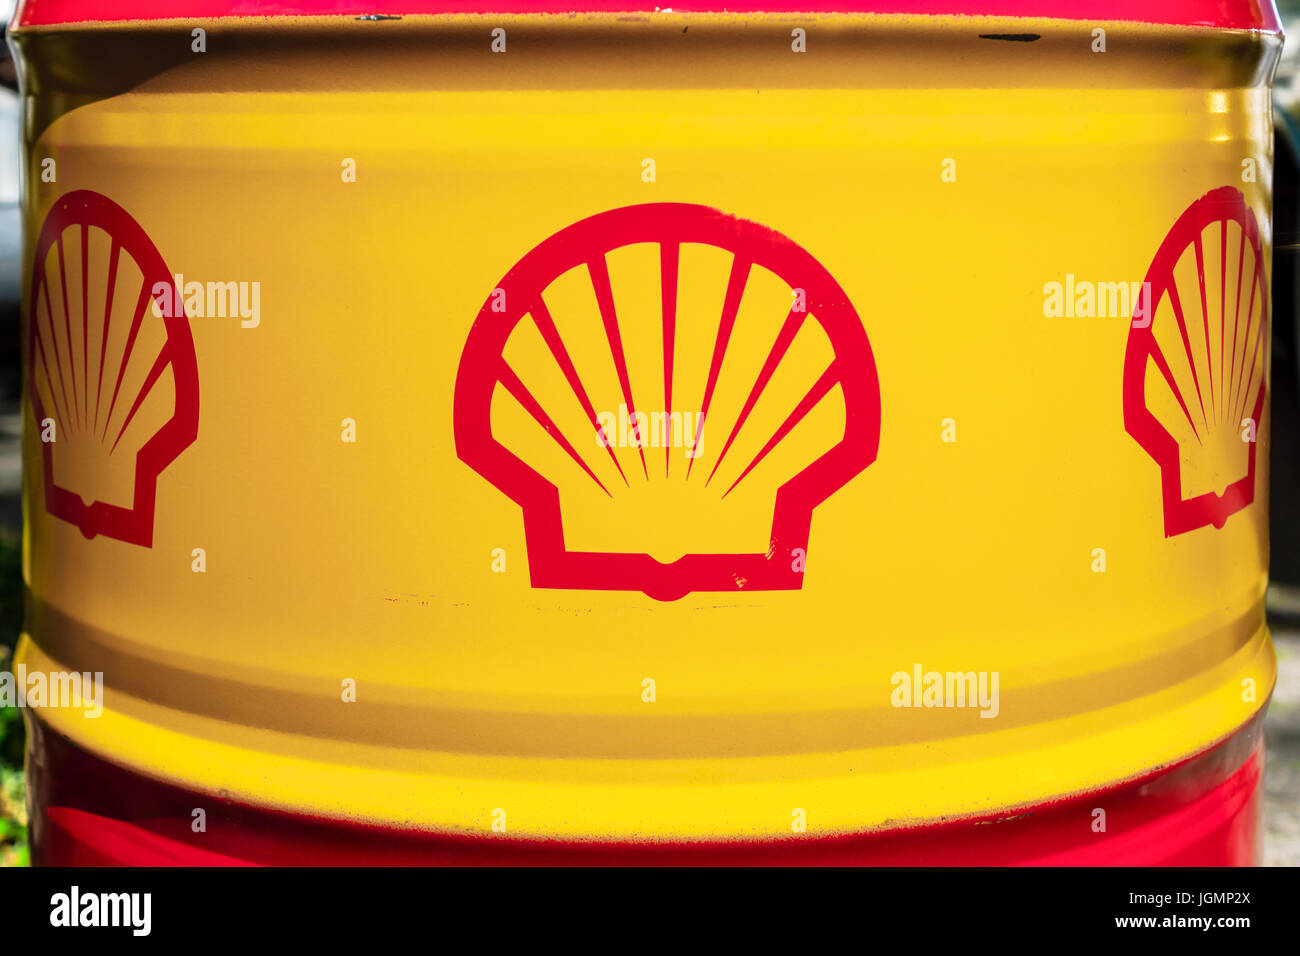 Shell-Emblem auf dem Barrel Erdöl. Stockfoto